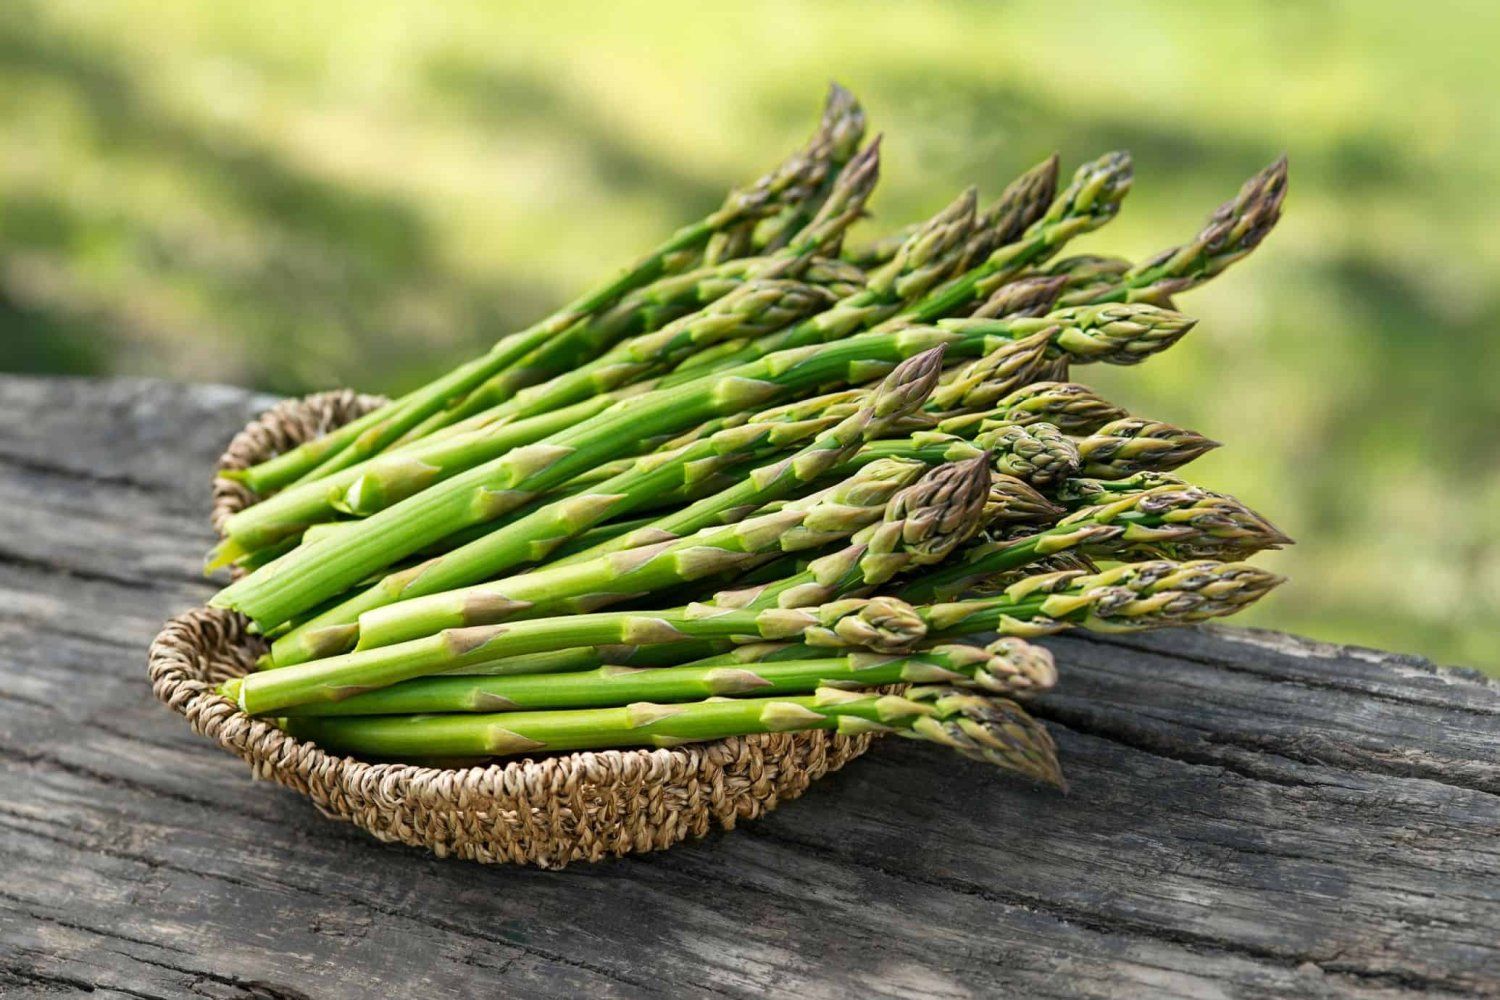 Next Happening: Spring Week 8: Asparagus is here!